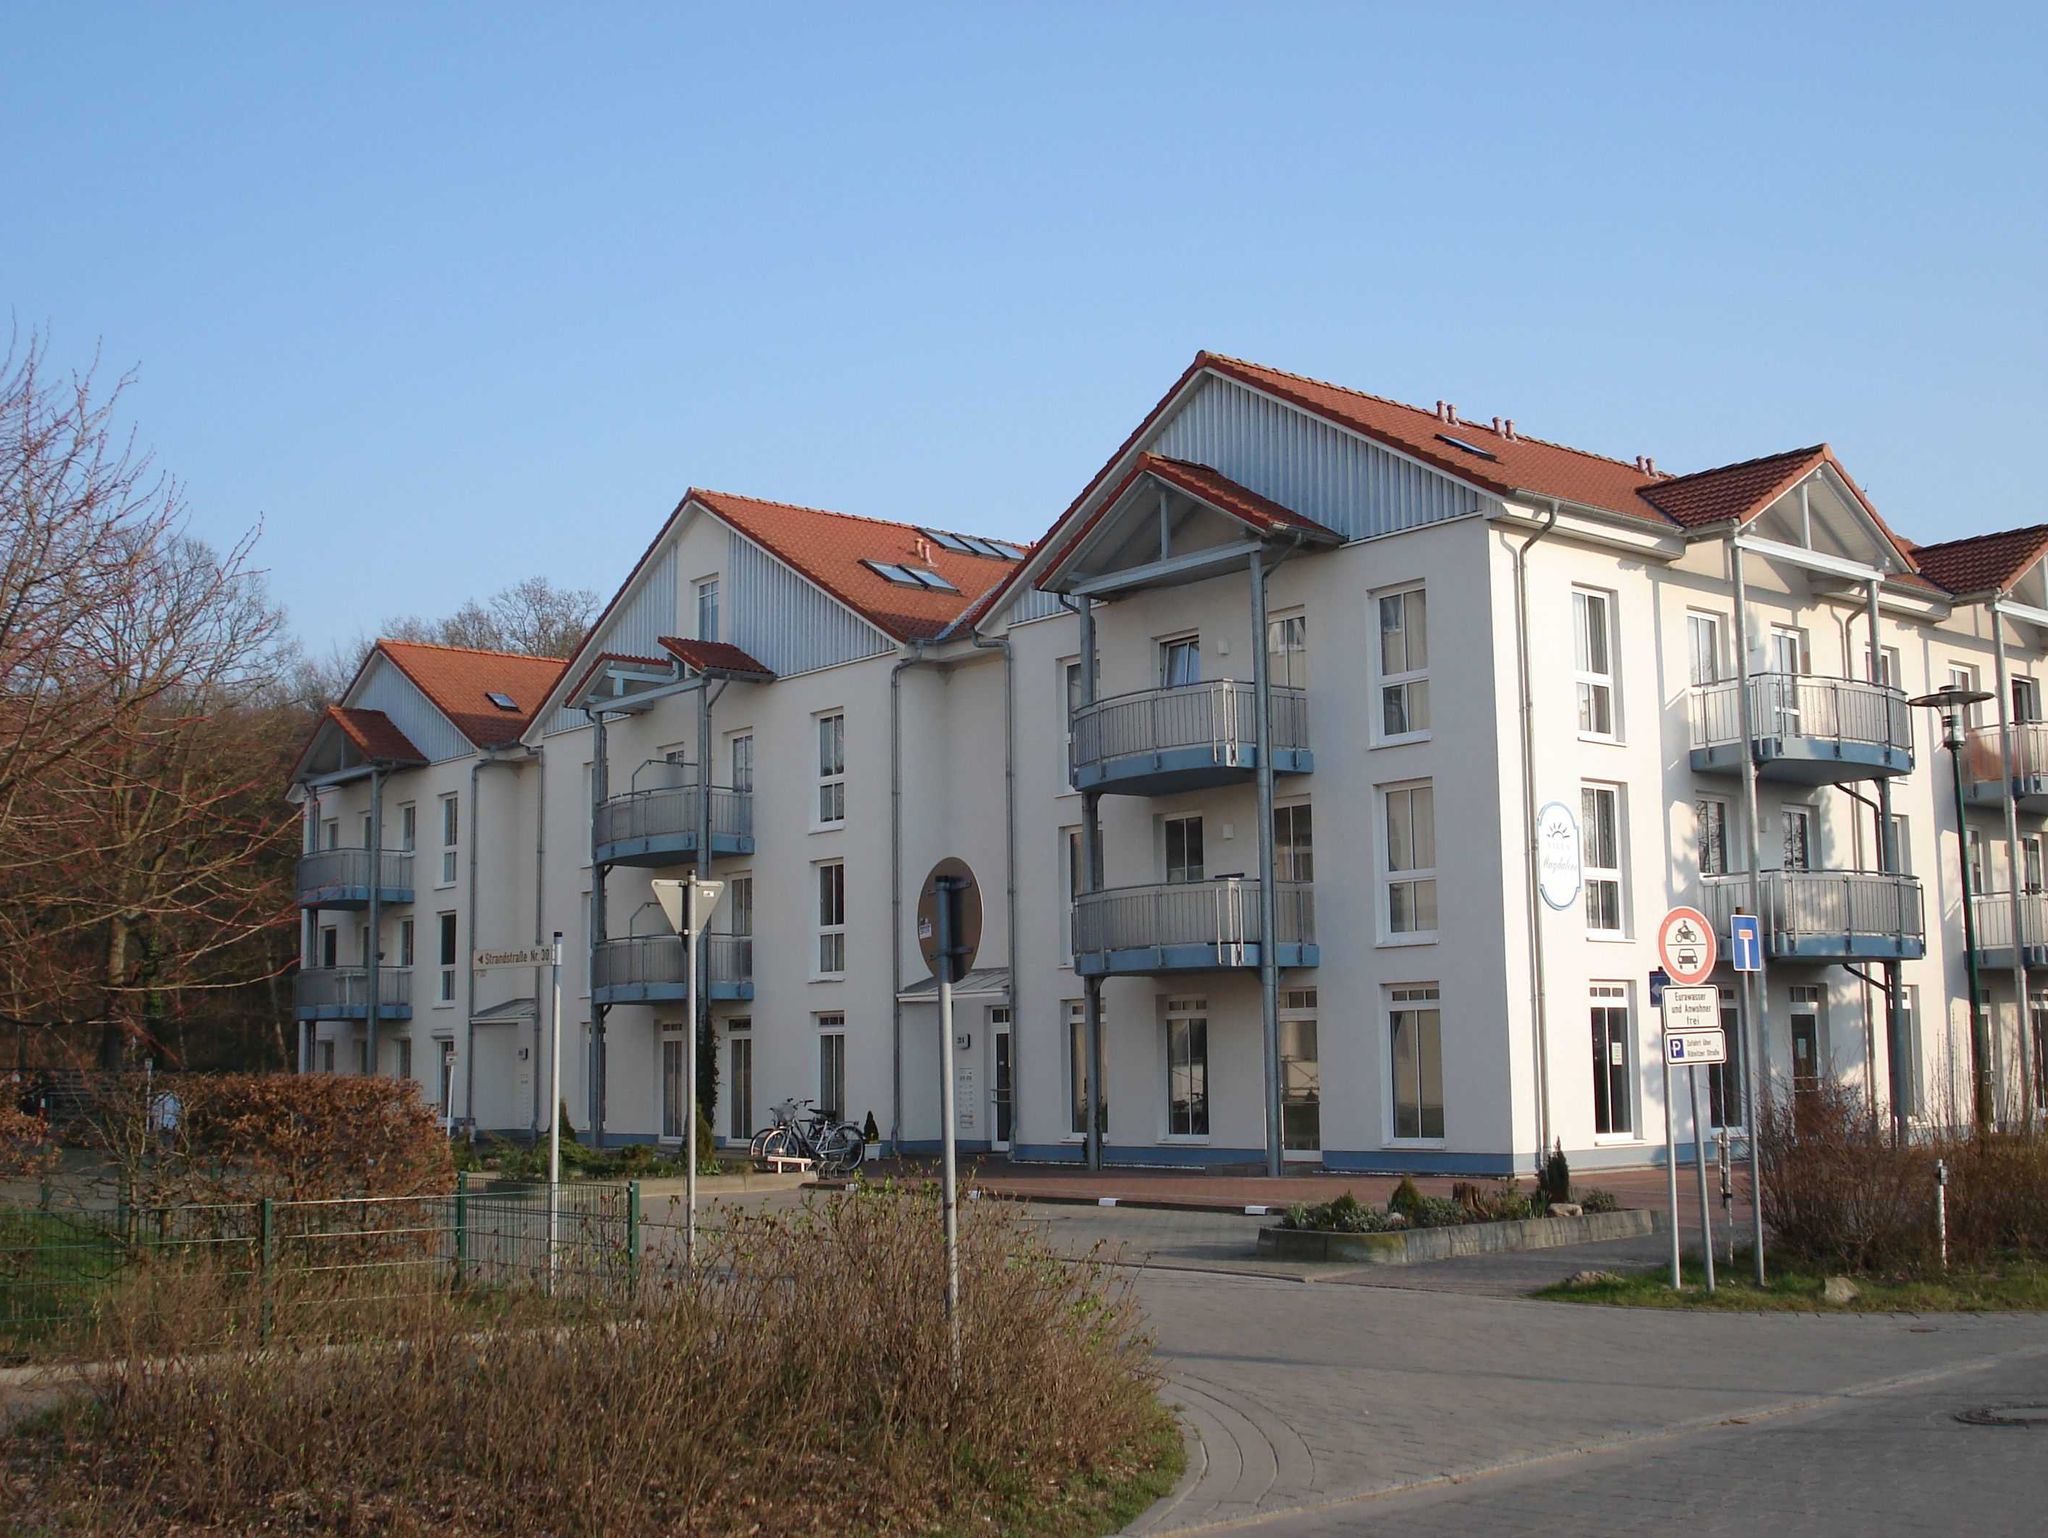 4 Landhäuser  in typisch mecklenburgischer Bauweise